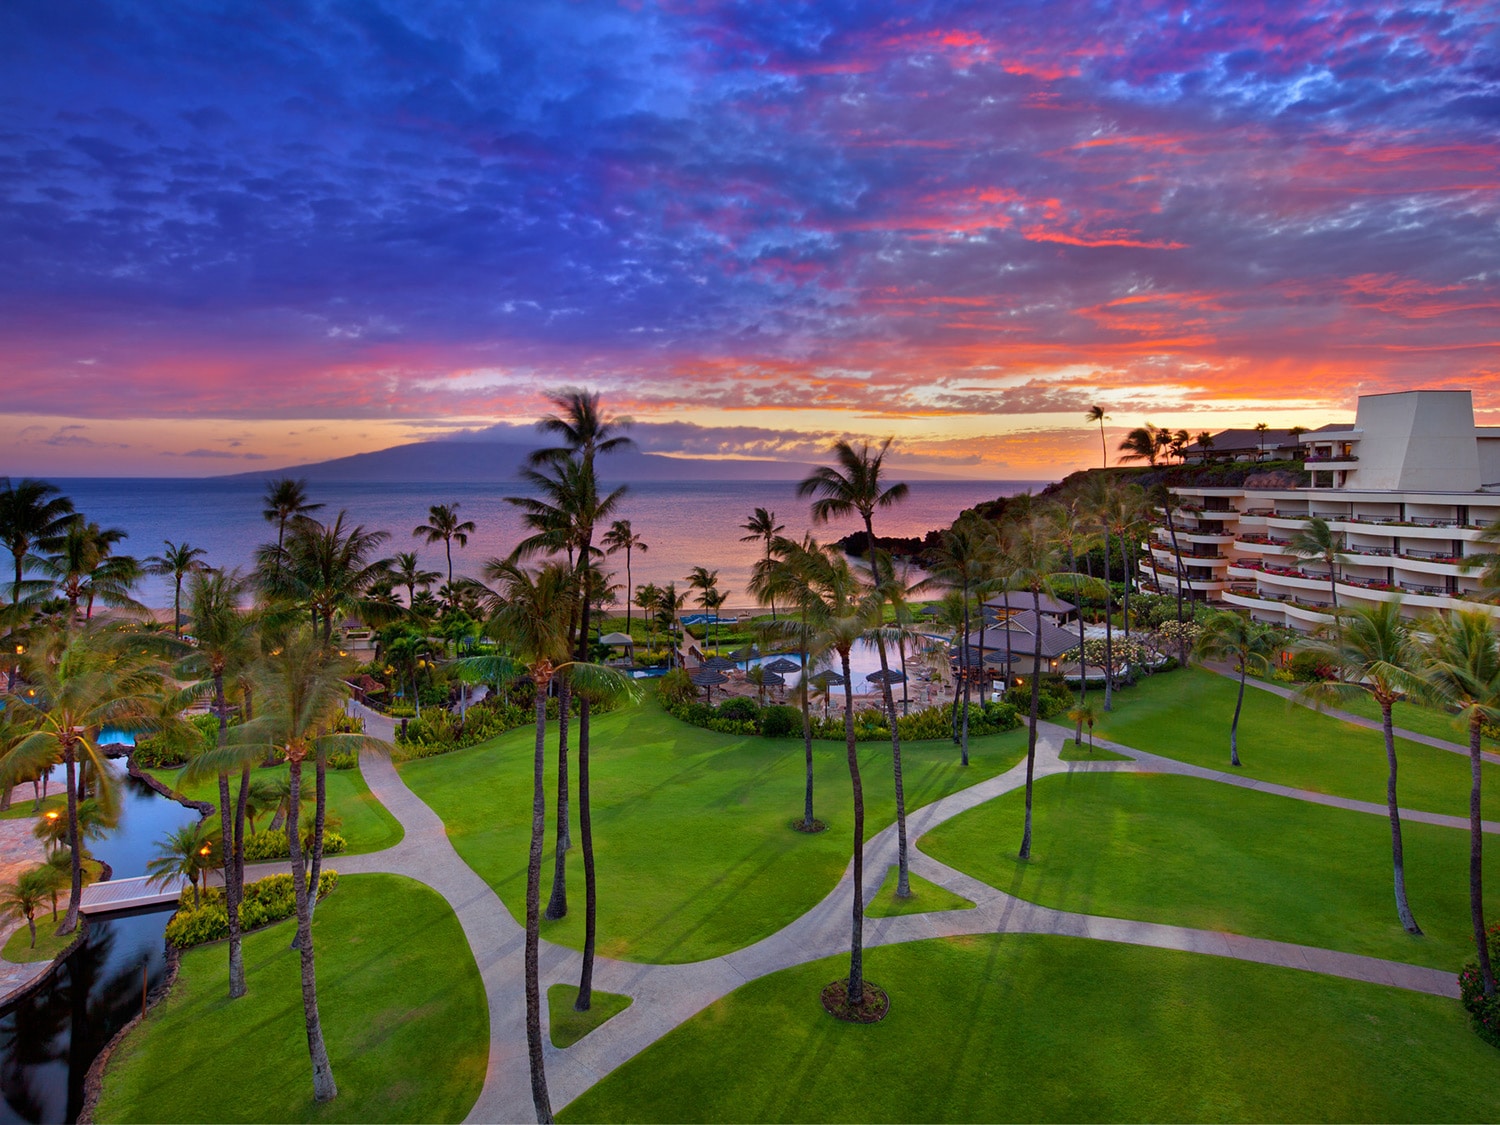 Sheraton Maui Resort & Spa sunset